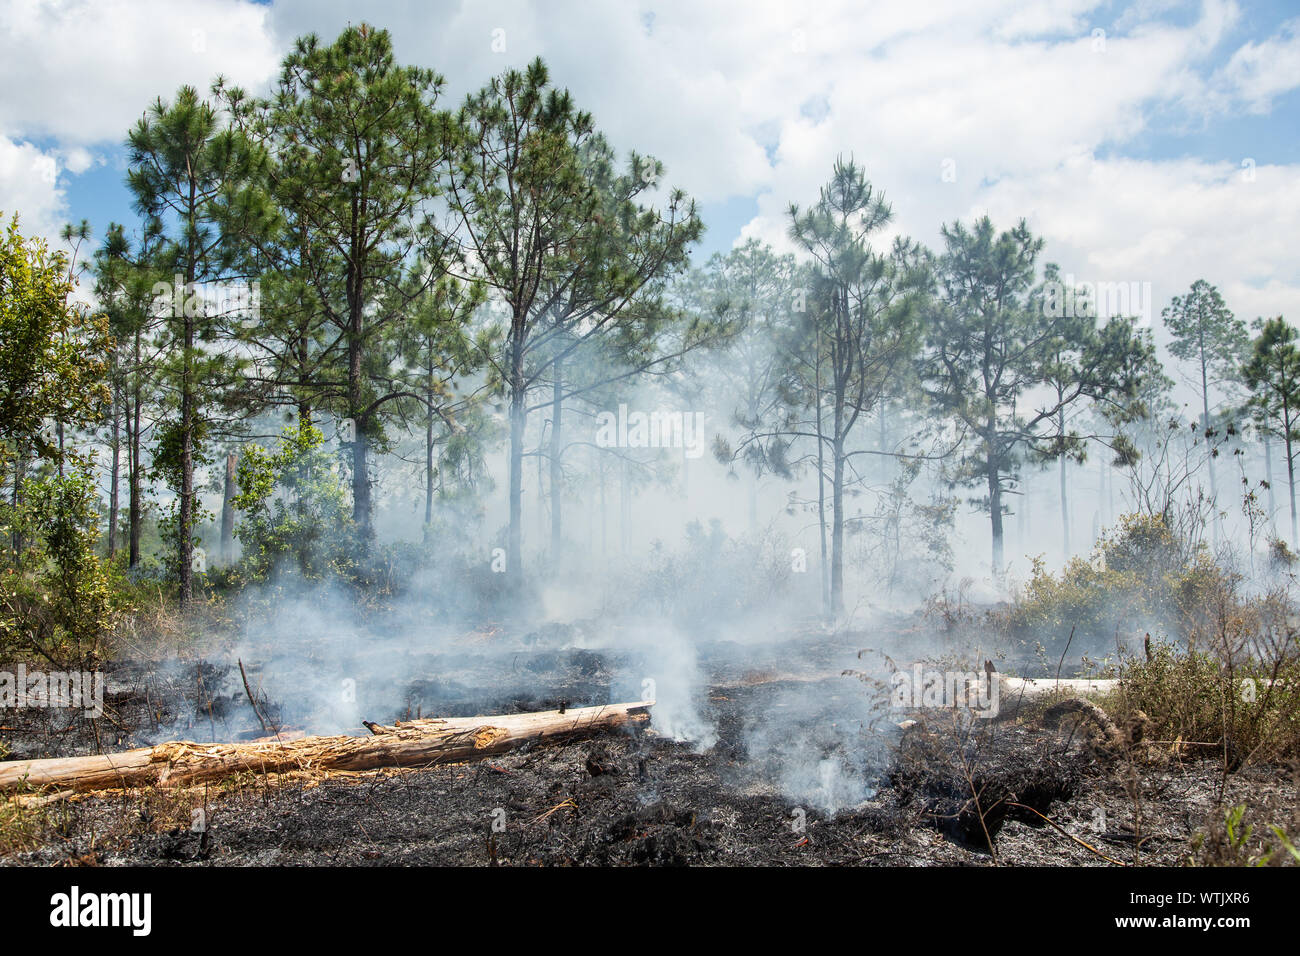 Brûlage dirigé pour restaurer la santé de l'écosystème à l'ancienne banque d'atténuation de la Floride dans le comté de Pasco, Florida, United States. Banque D'Images